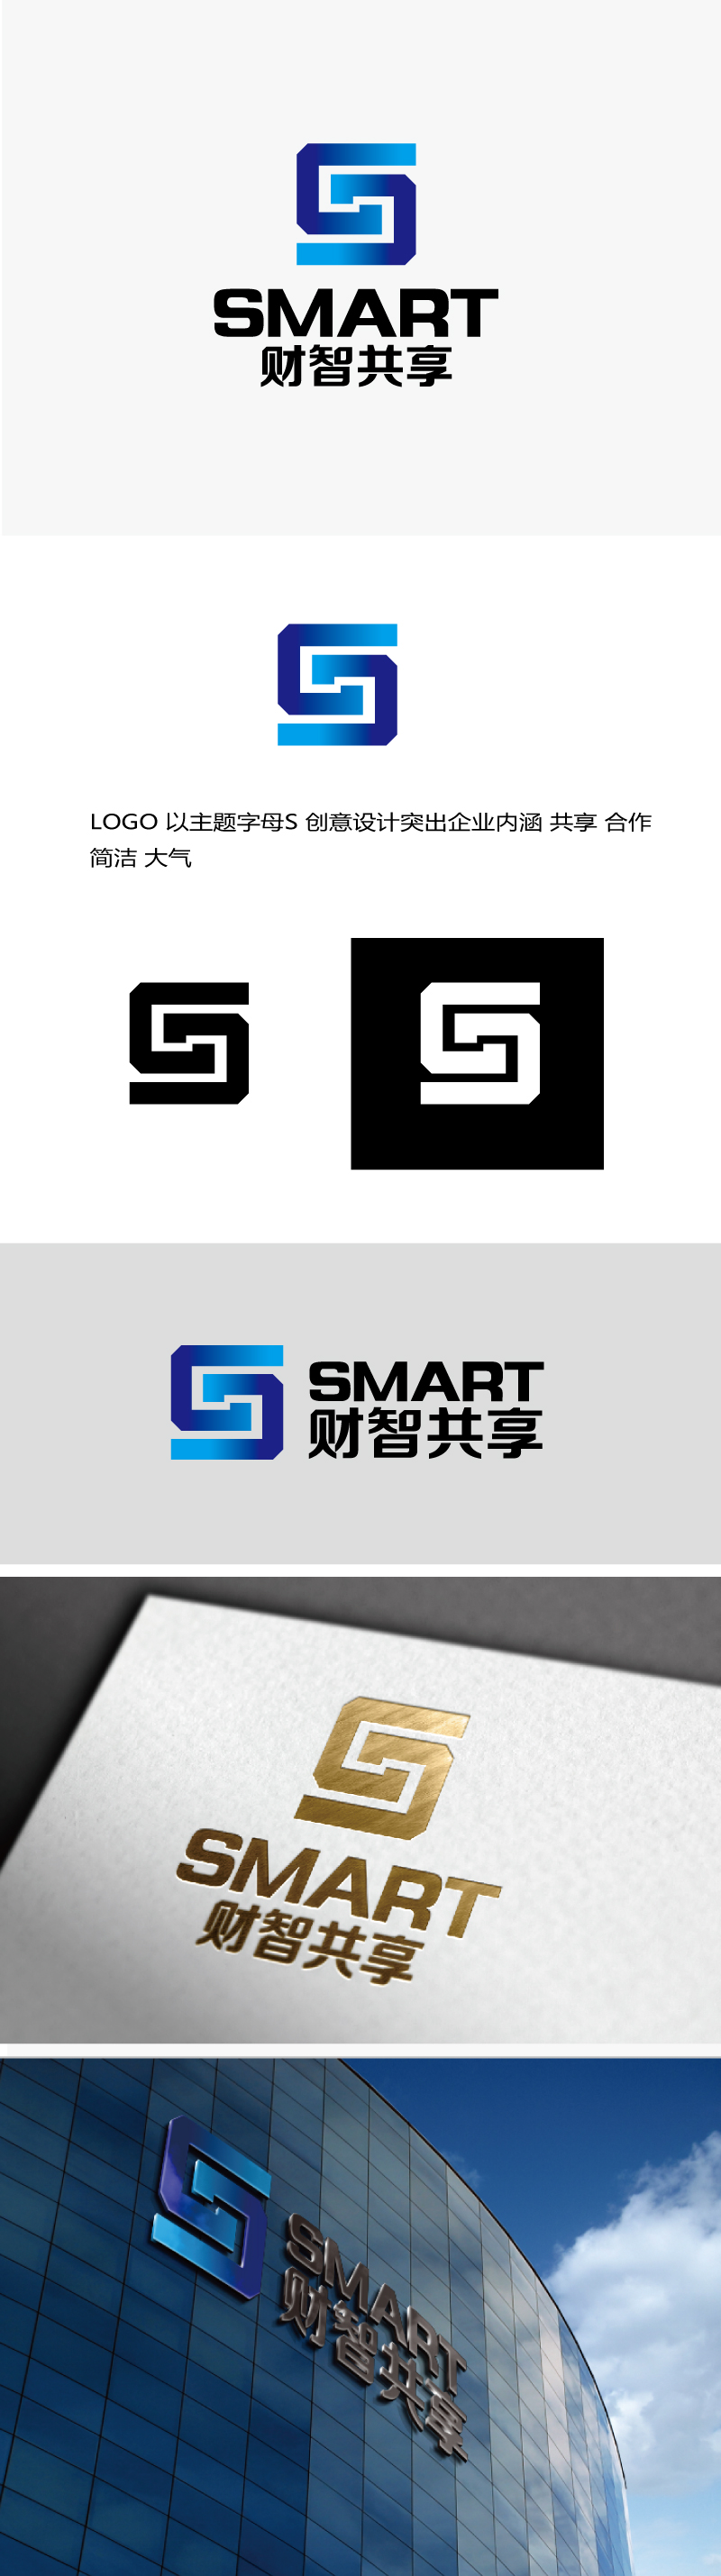 张俊的财智共享（北京）技术服务有限公司logo设计